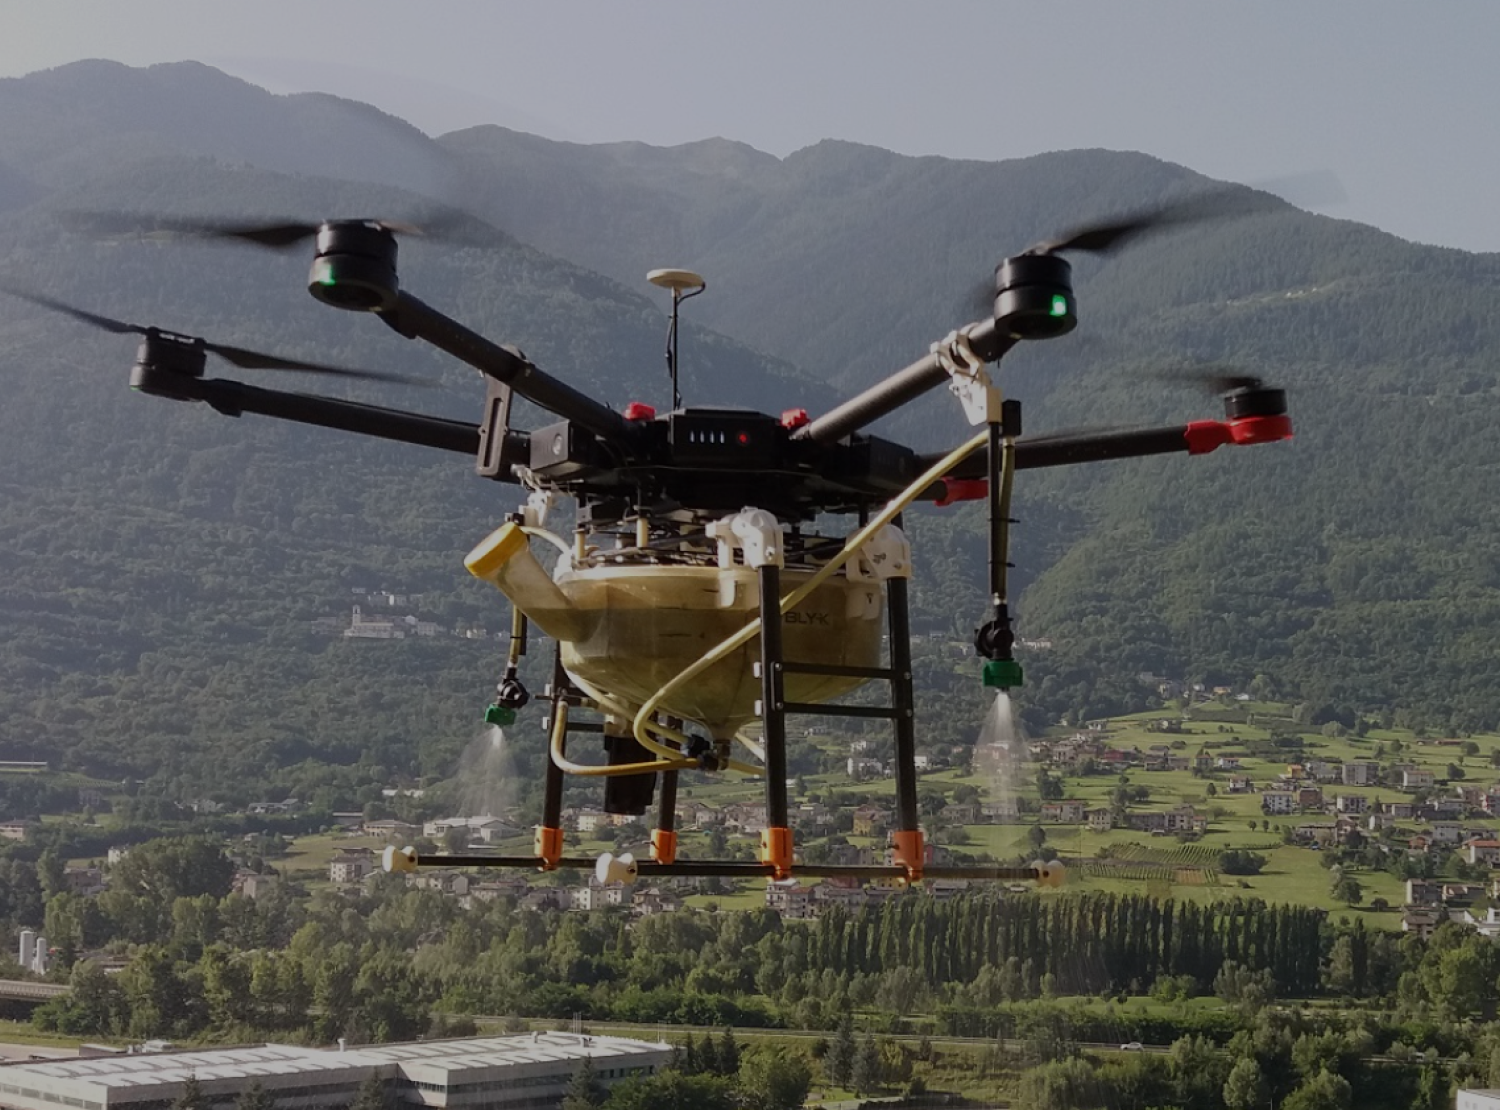 droni per agricoltura - distribuzione liquidi